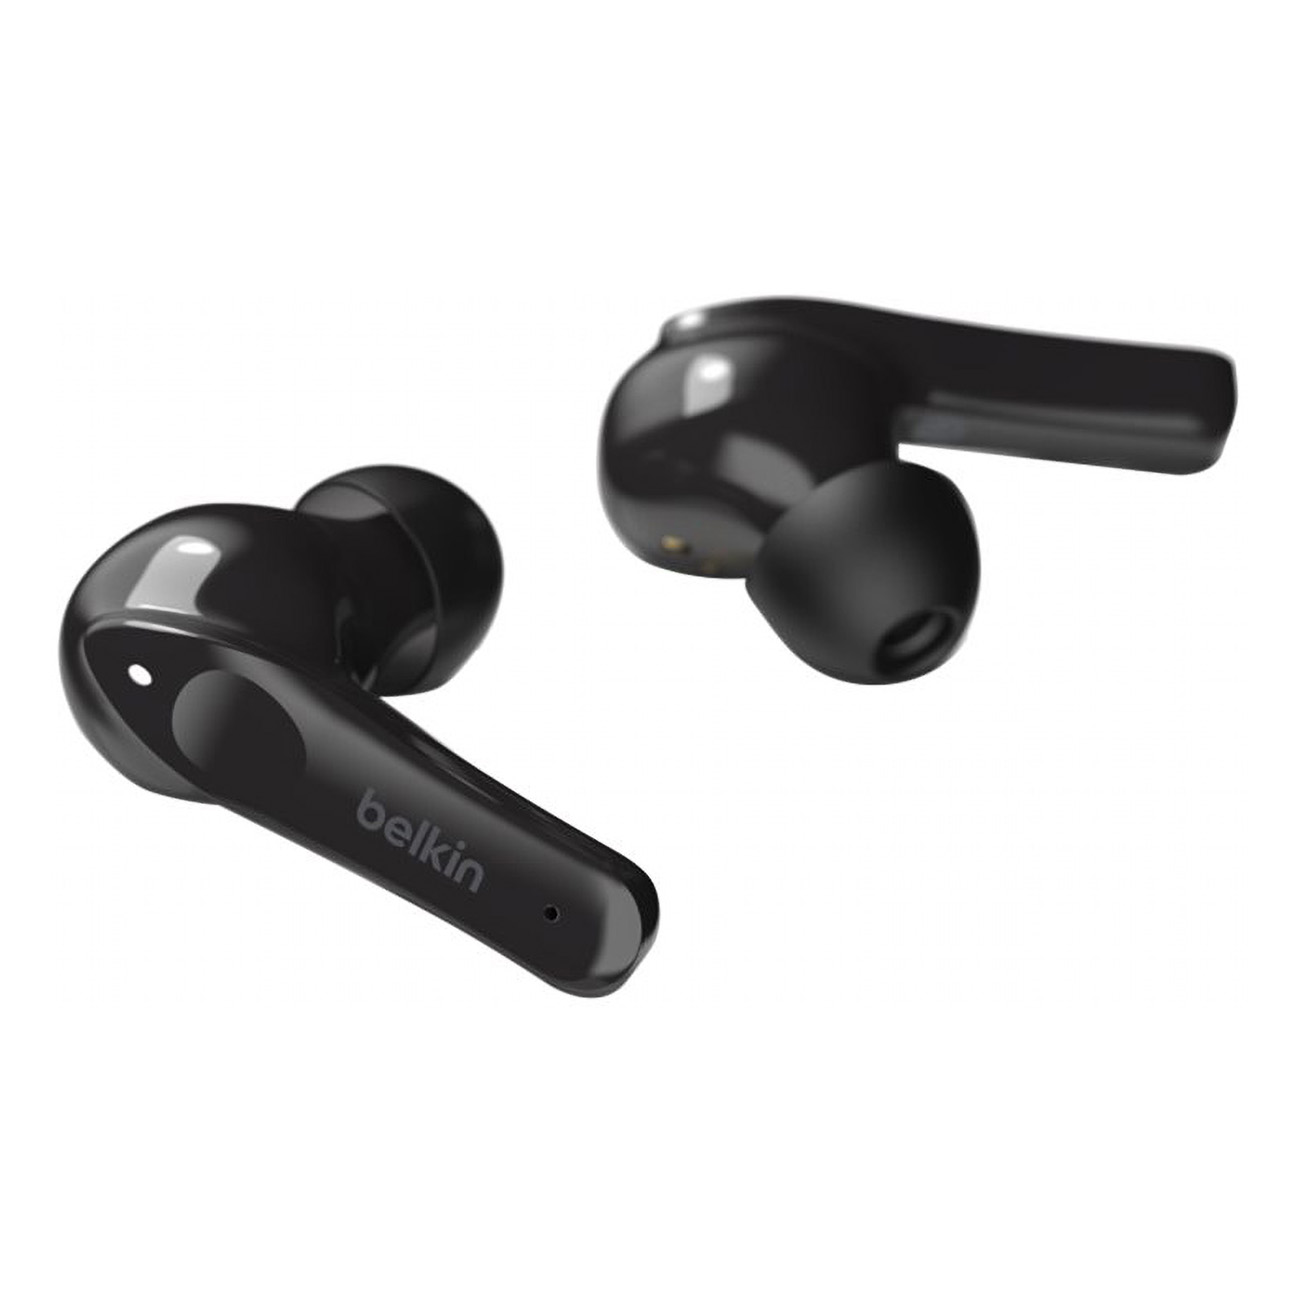 Bluetooth Kopfhörer Plus, Move BELKIN In-ear Soundform schwarz